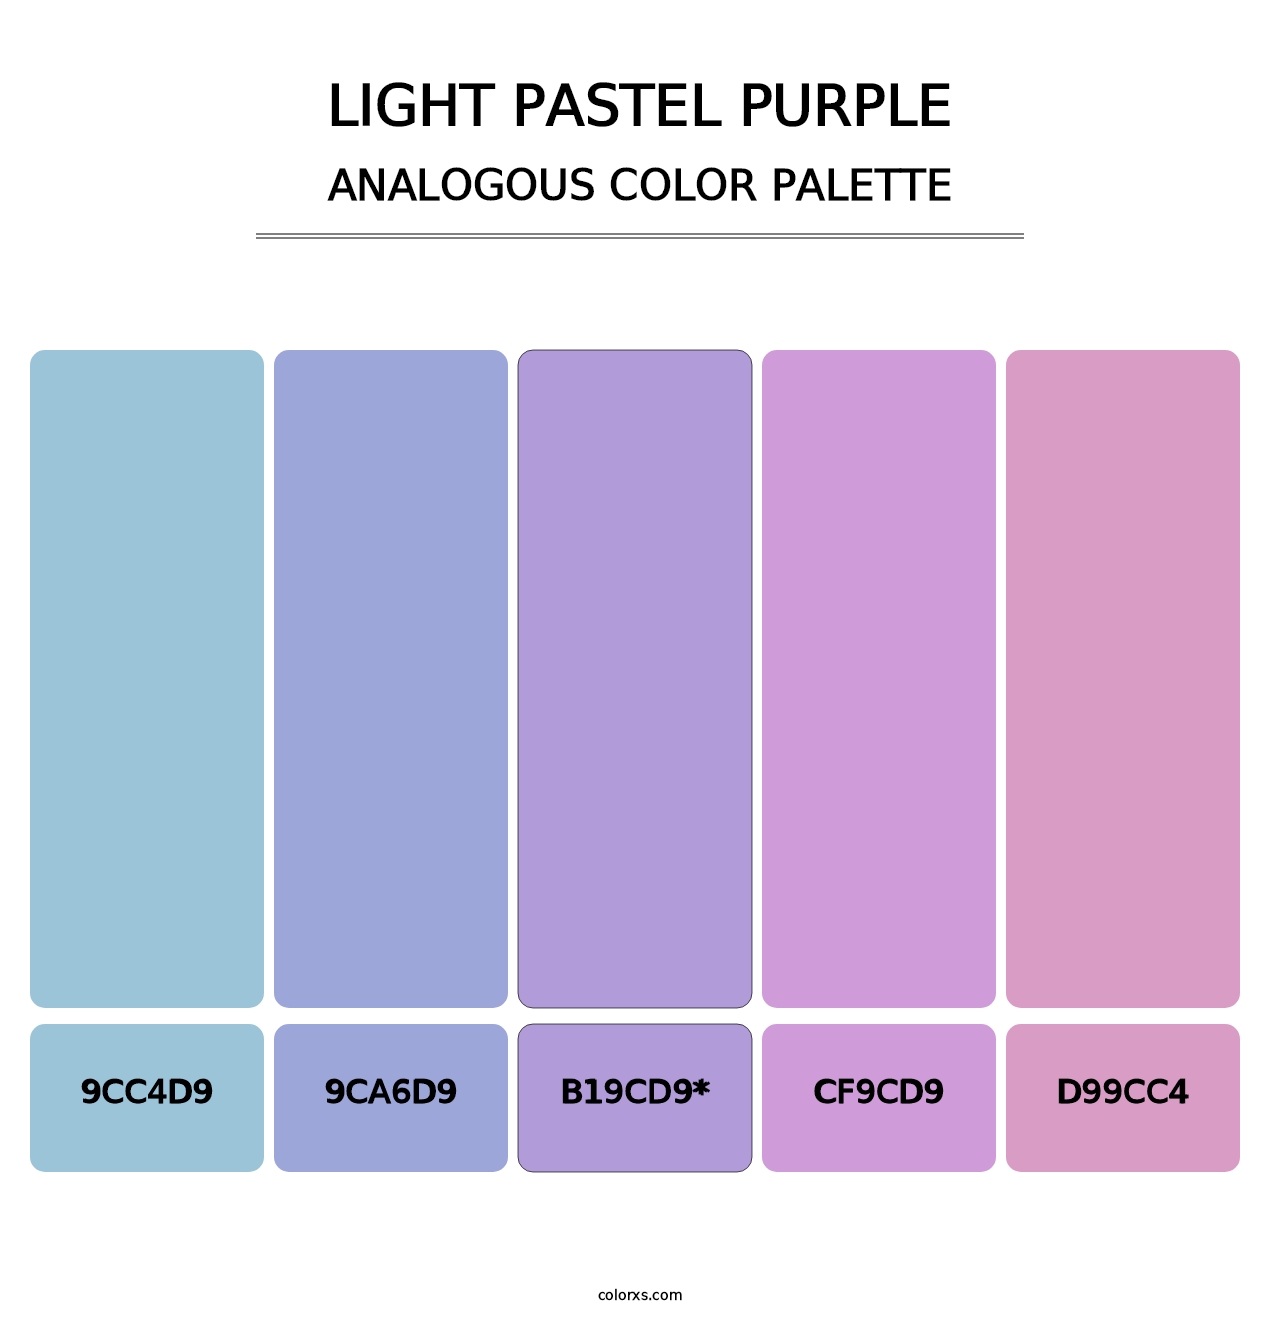 Light Pastel Purple - Analogous Color Palette